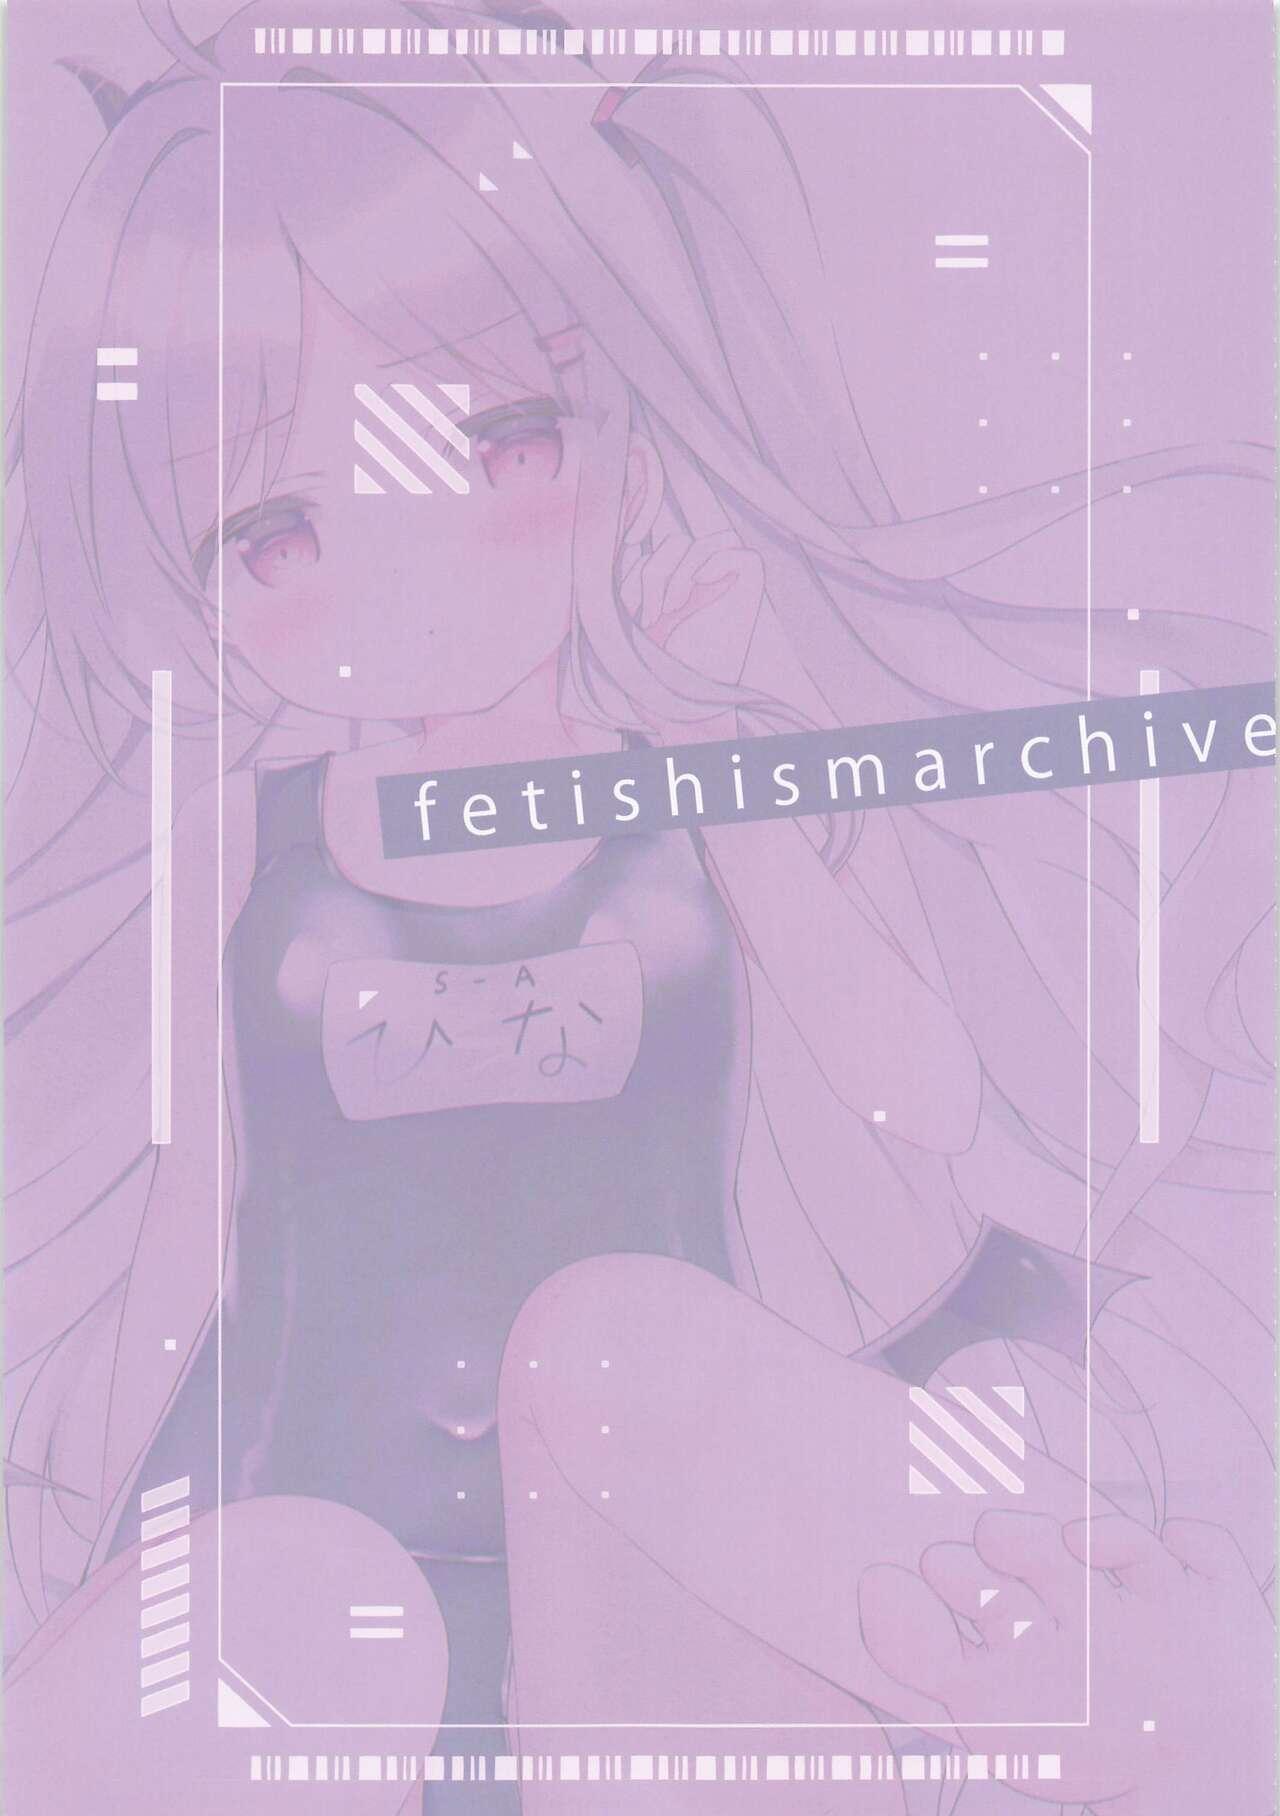 fetishismarchive 1